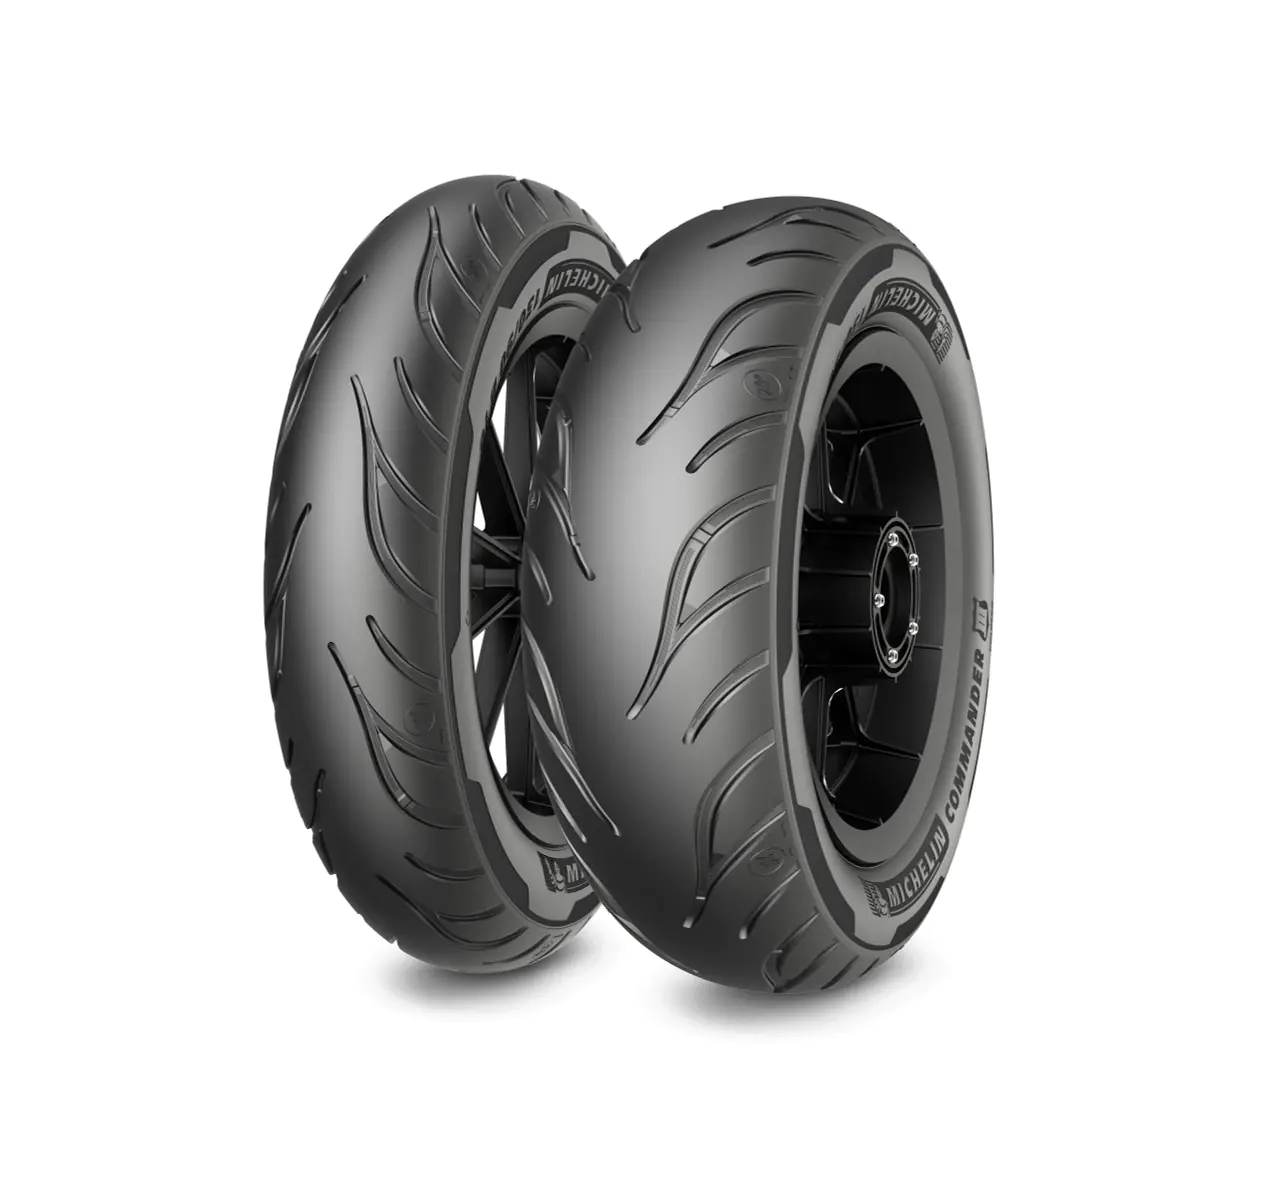 Michelin Michelin 140/90-15 76H COMMANDER 3 CRUISE pneumatici nuovi Estivo 